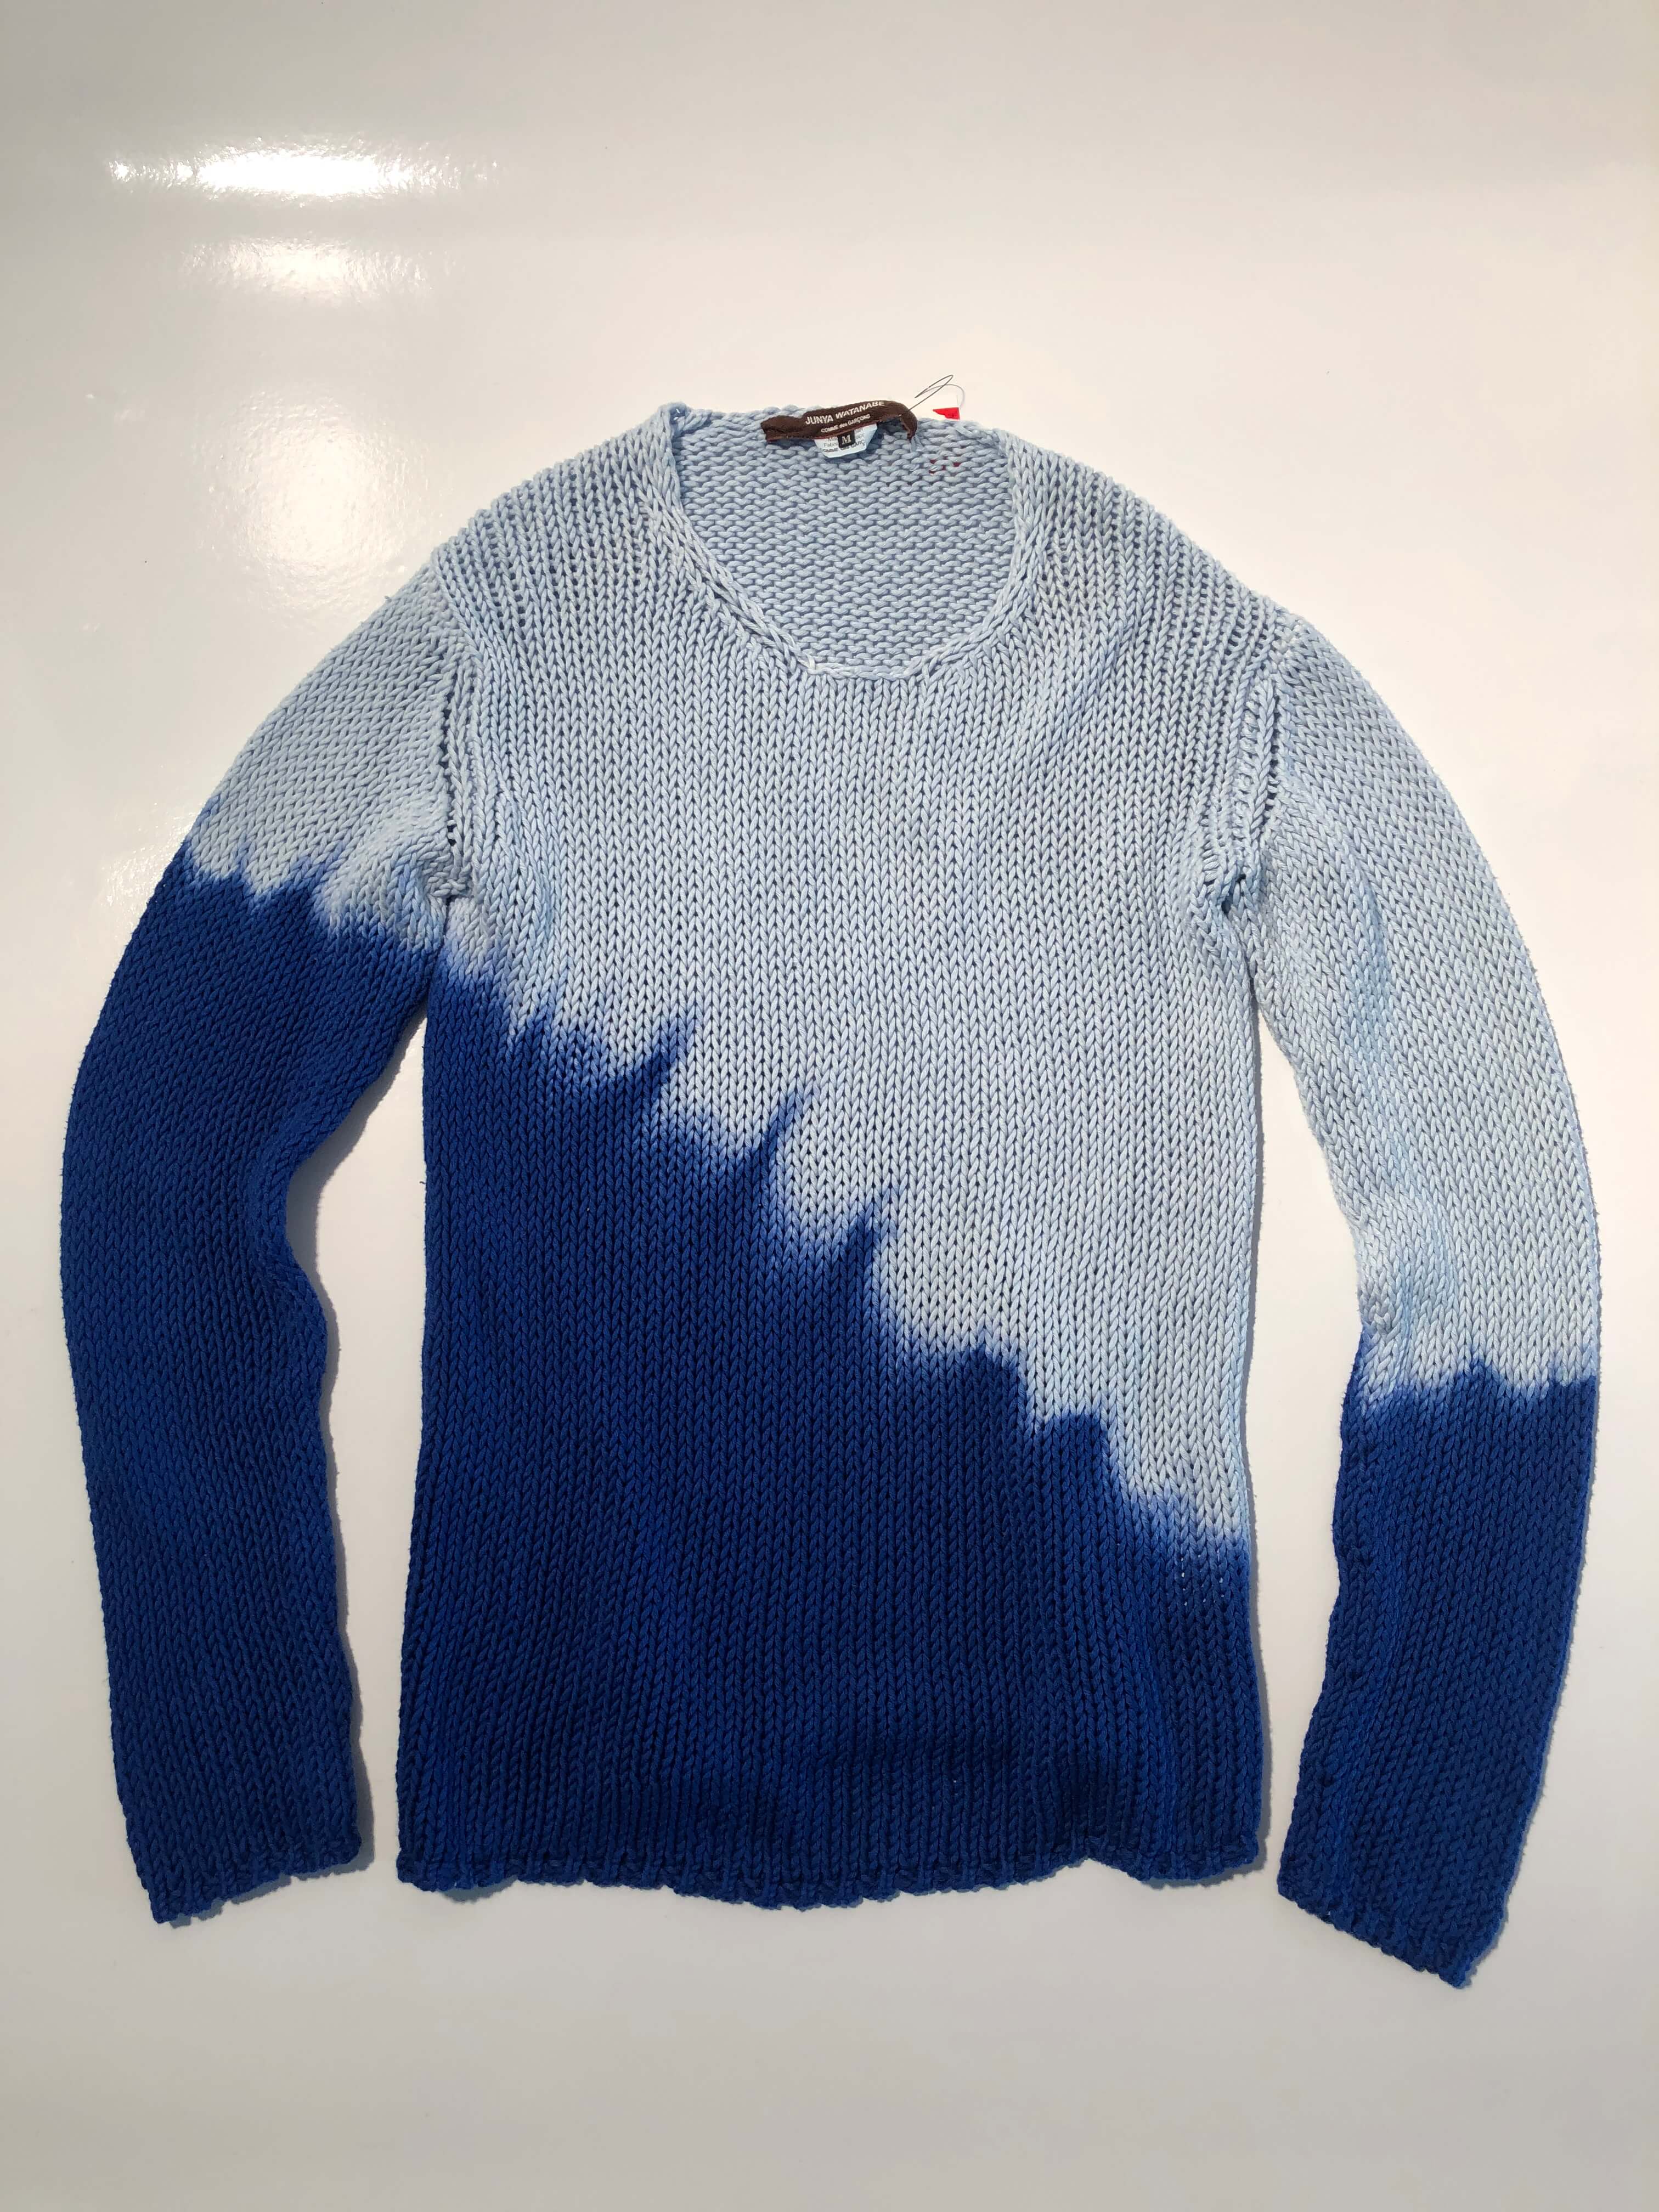 JUNYA WATANABE 2018 dyeing knit